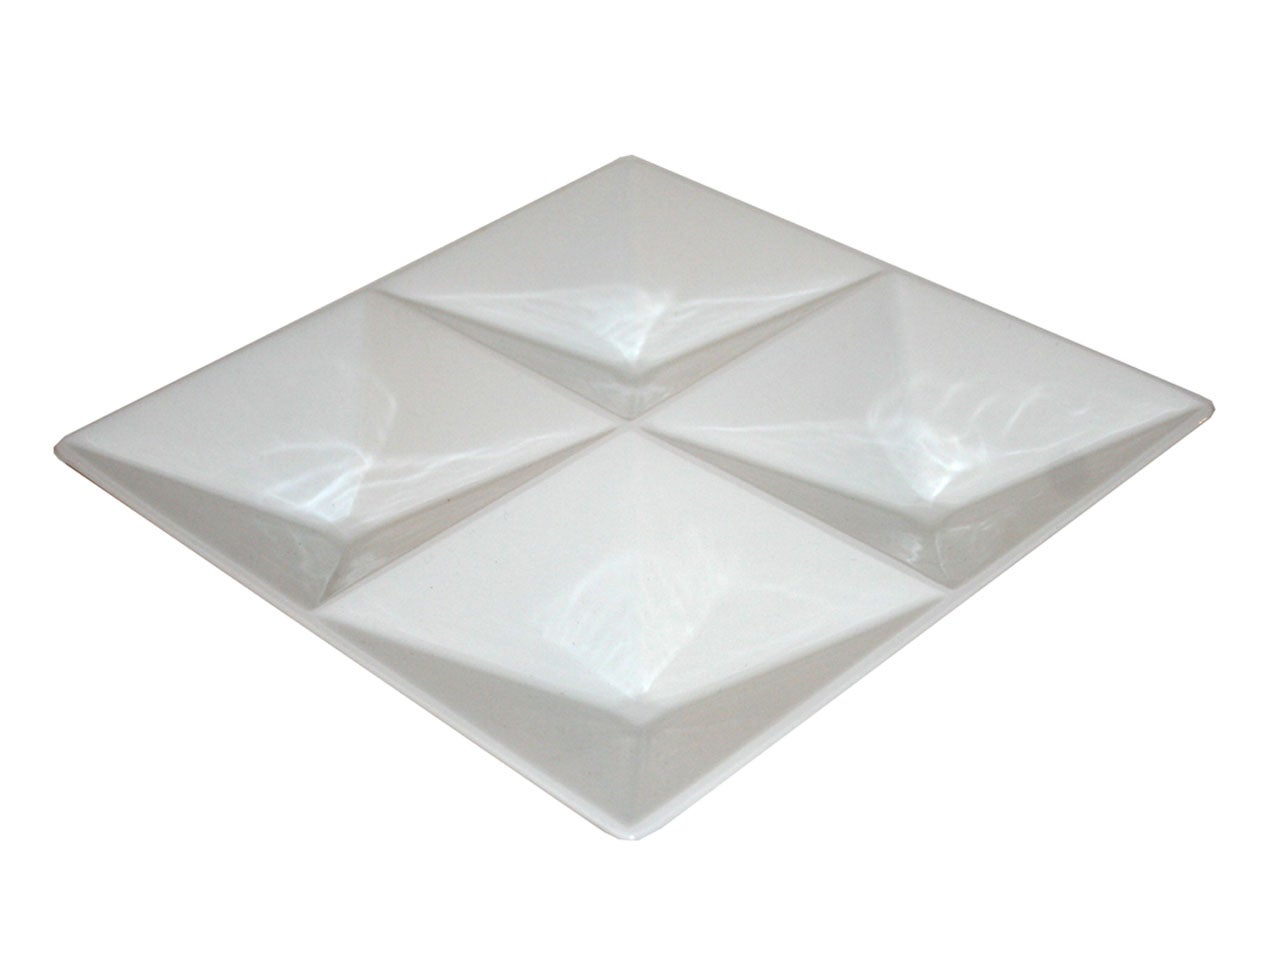 Origami Dish Designed by Kaj Franck For Arabia